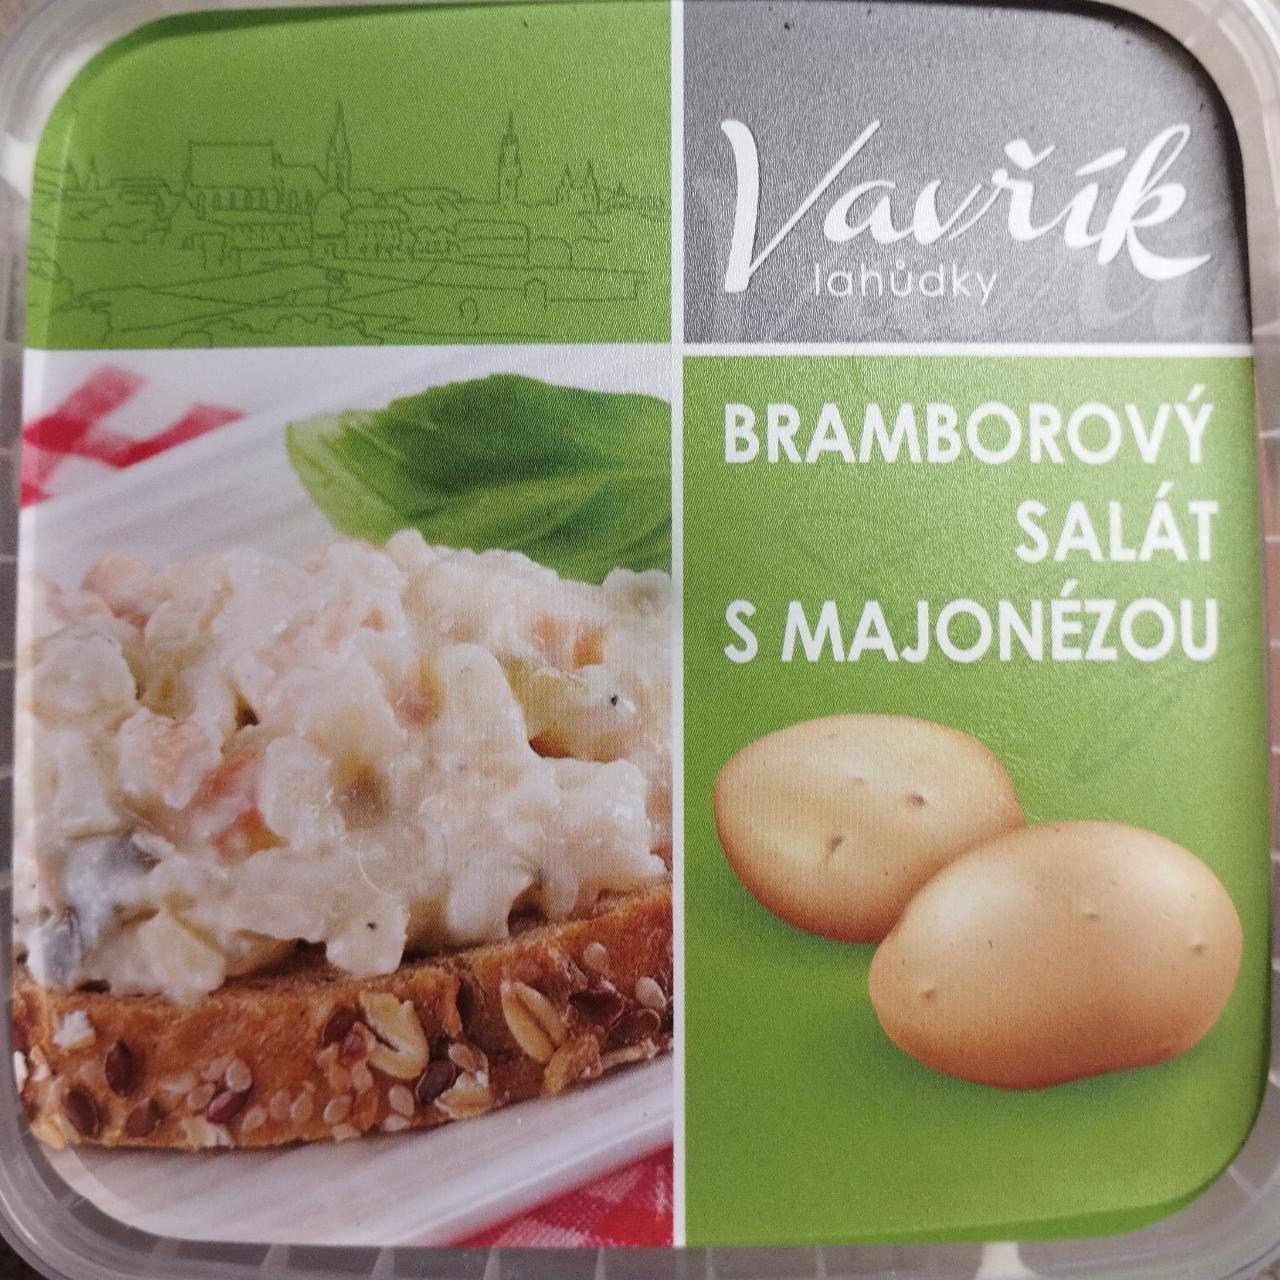 Fotografie - Bramborový salát s majonézou Vavřík